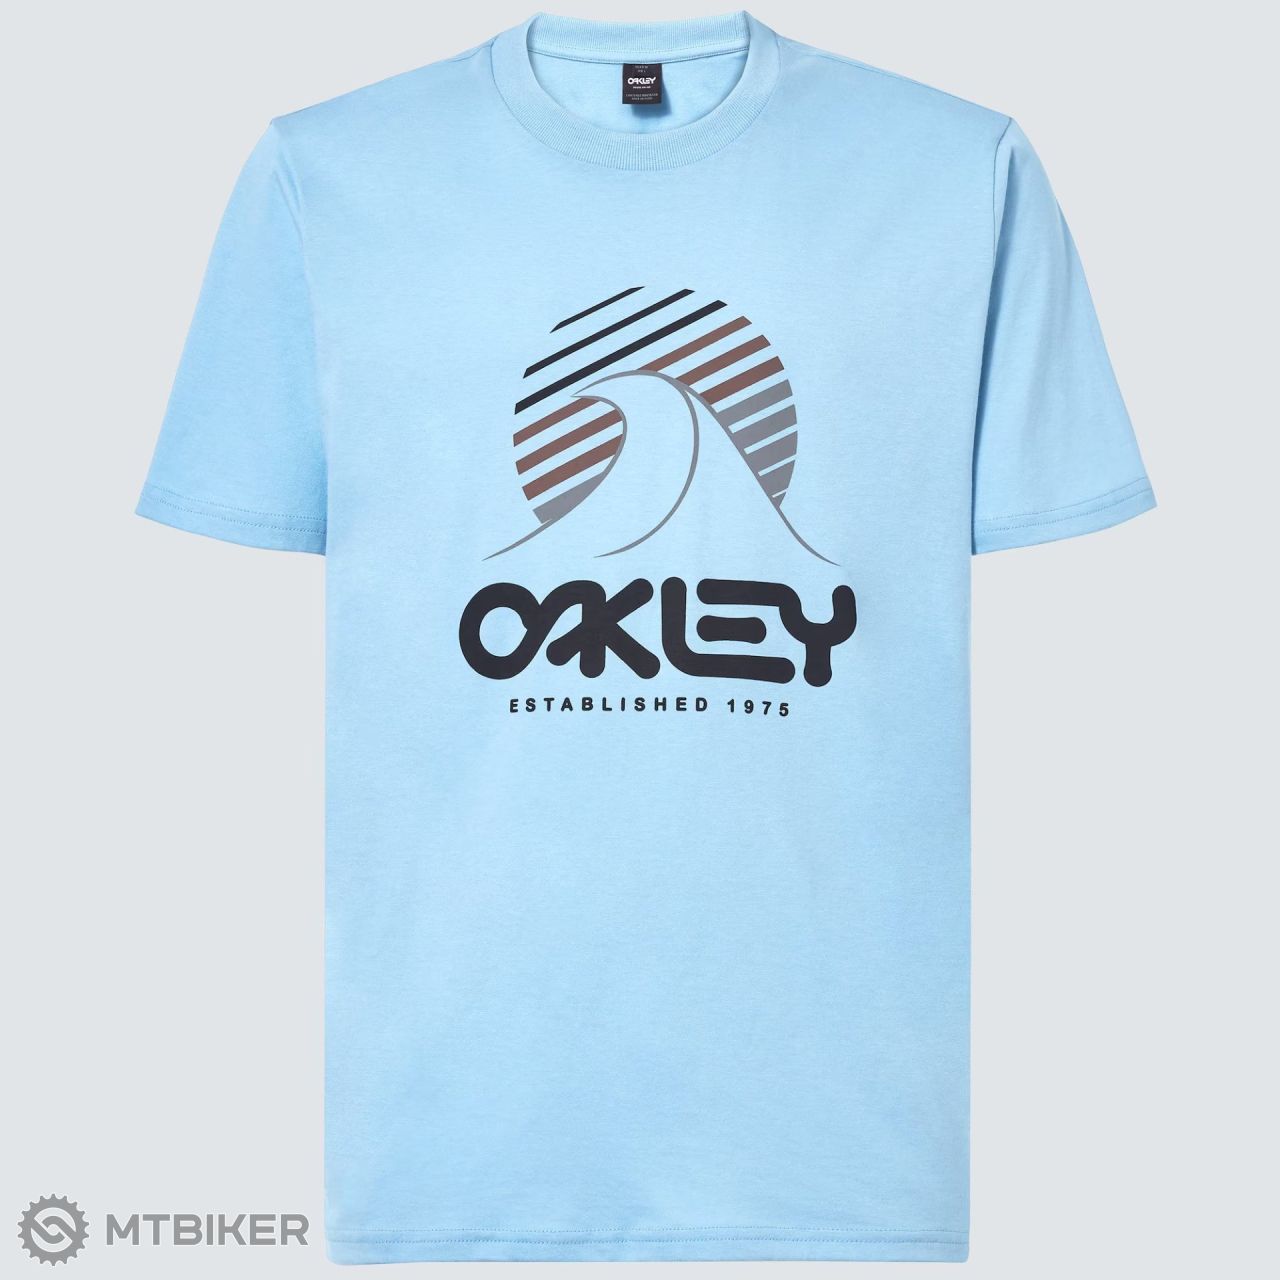 Oakley One Wave B1B triko, stonewash blue